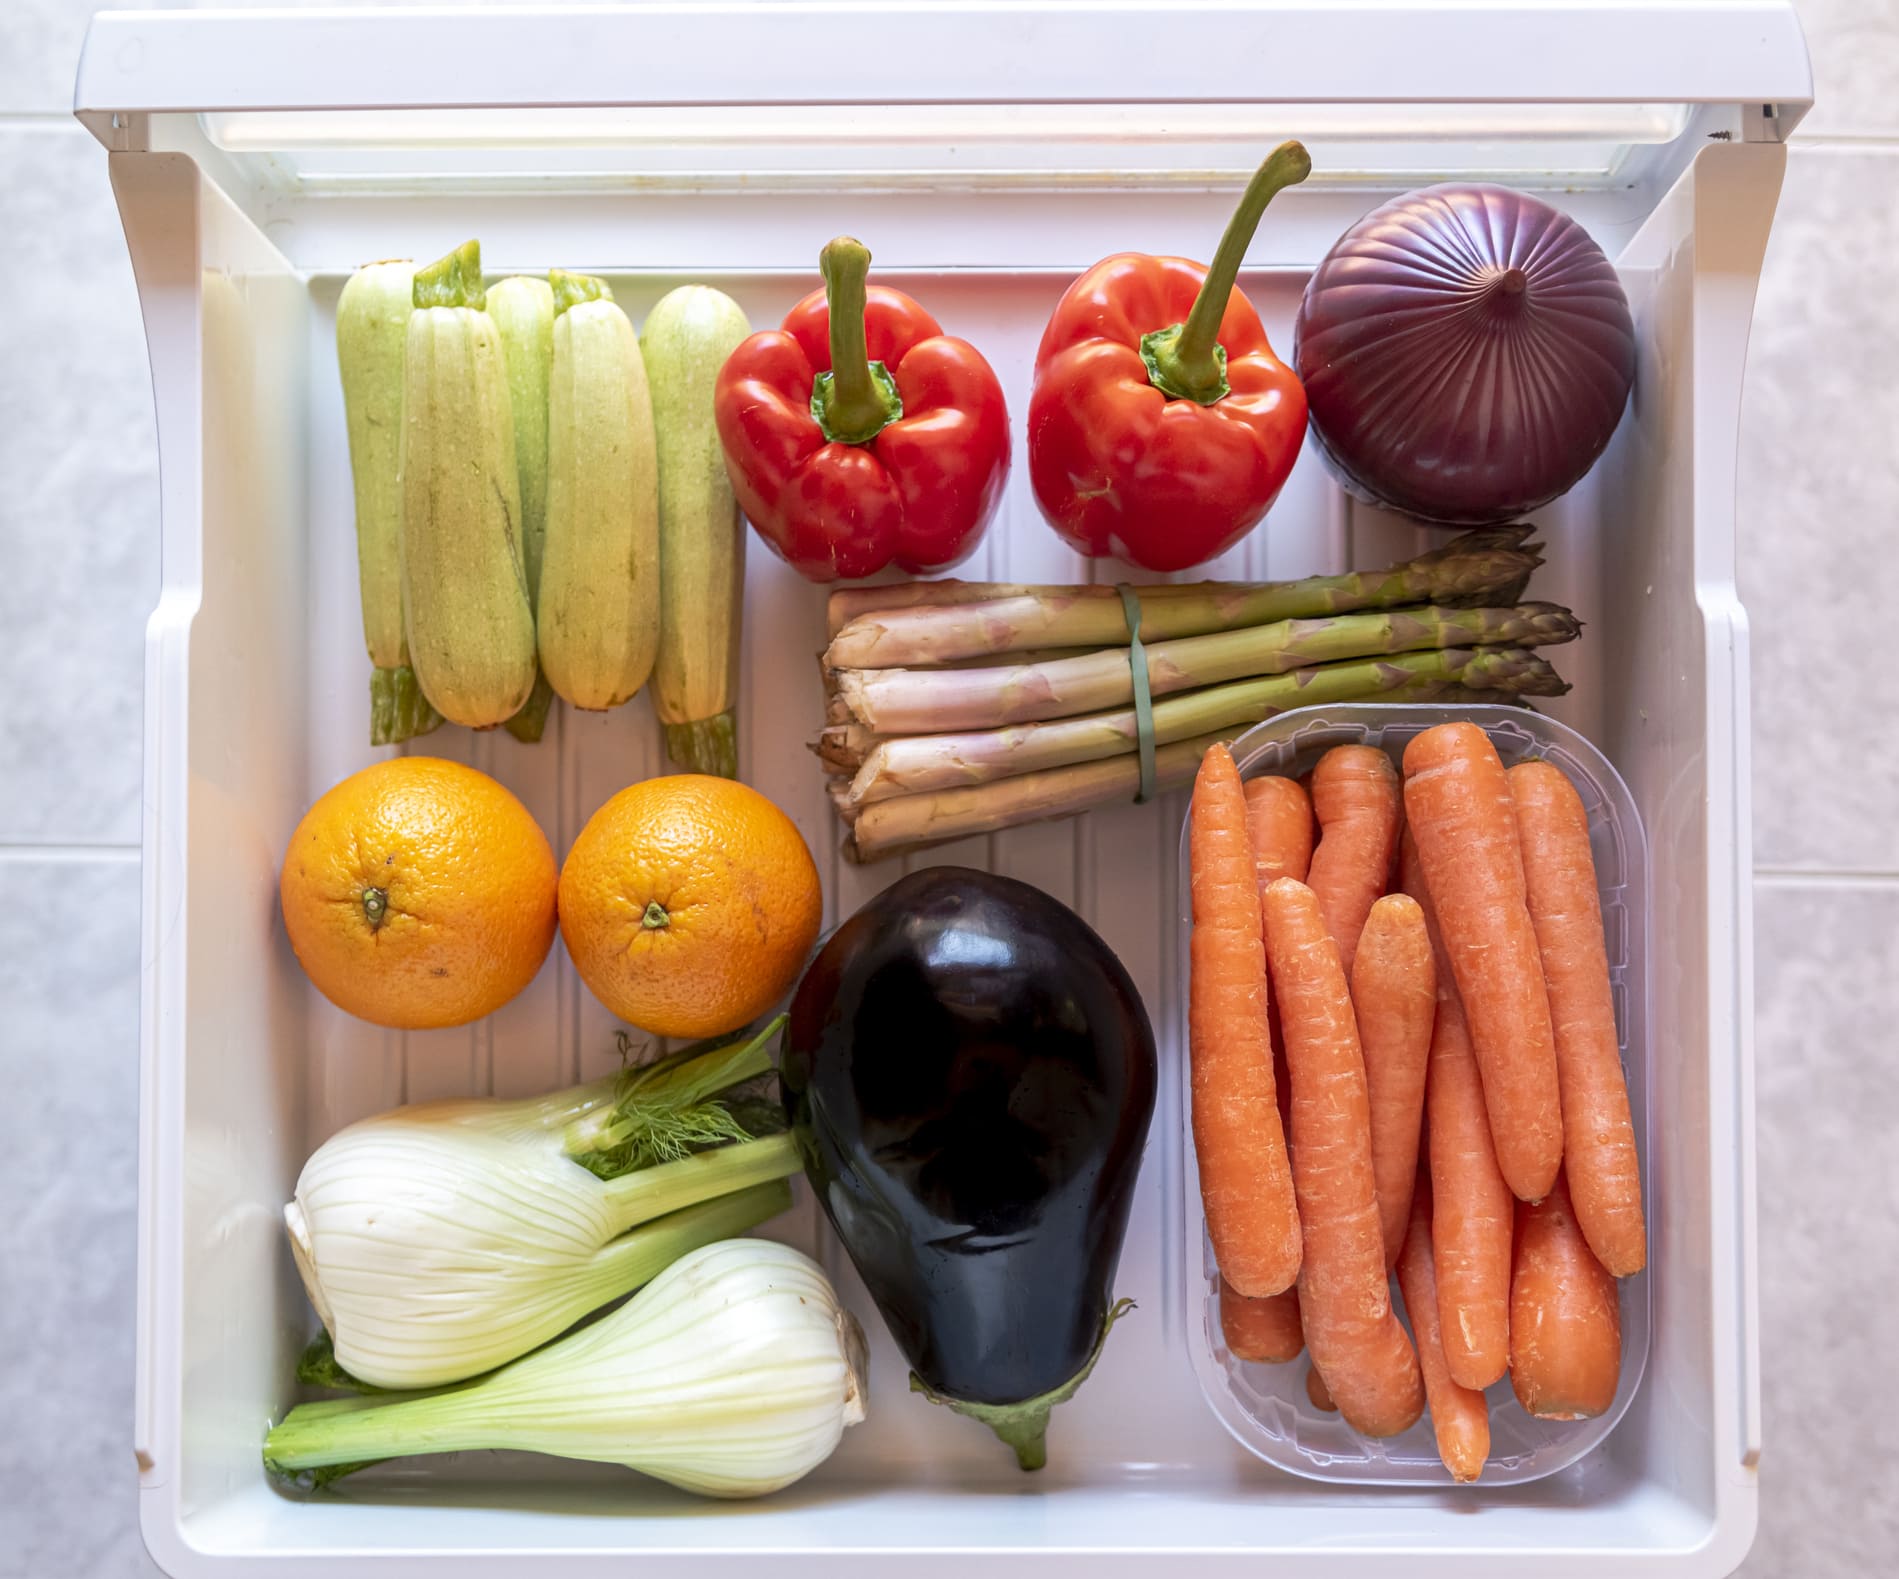 Frutas y verduras almacenadas en el cajón de la nevera.